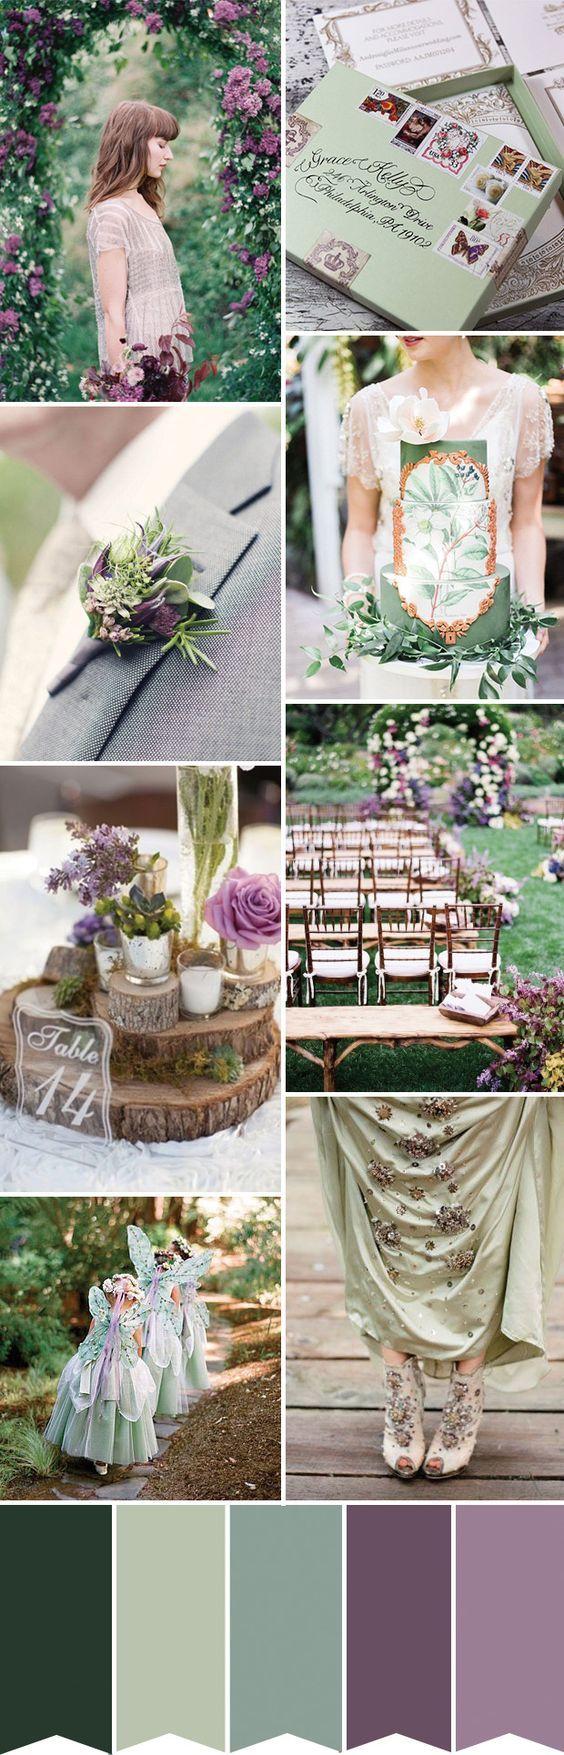 زفاف - A Fairytale Grean And Purple Wedding Inspiration Palette 